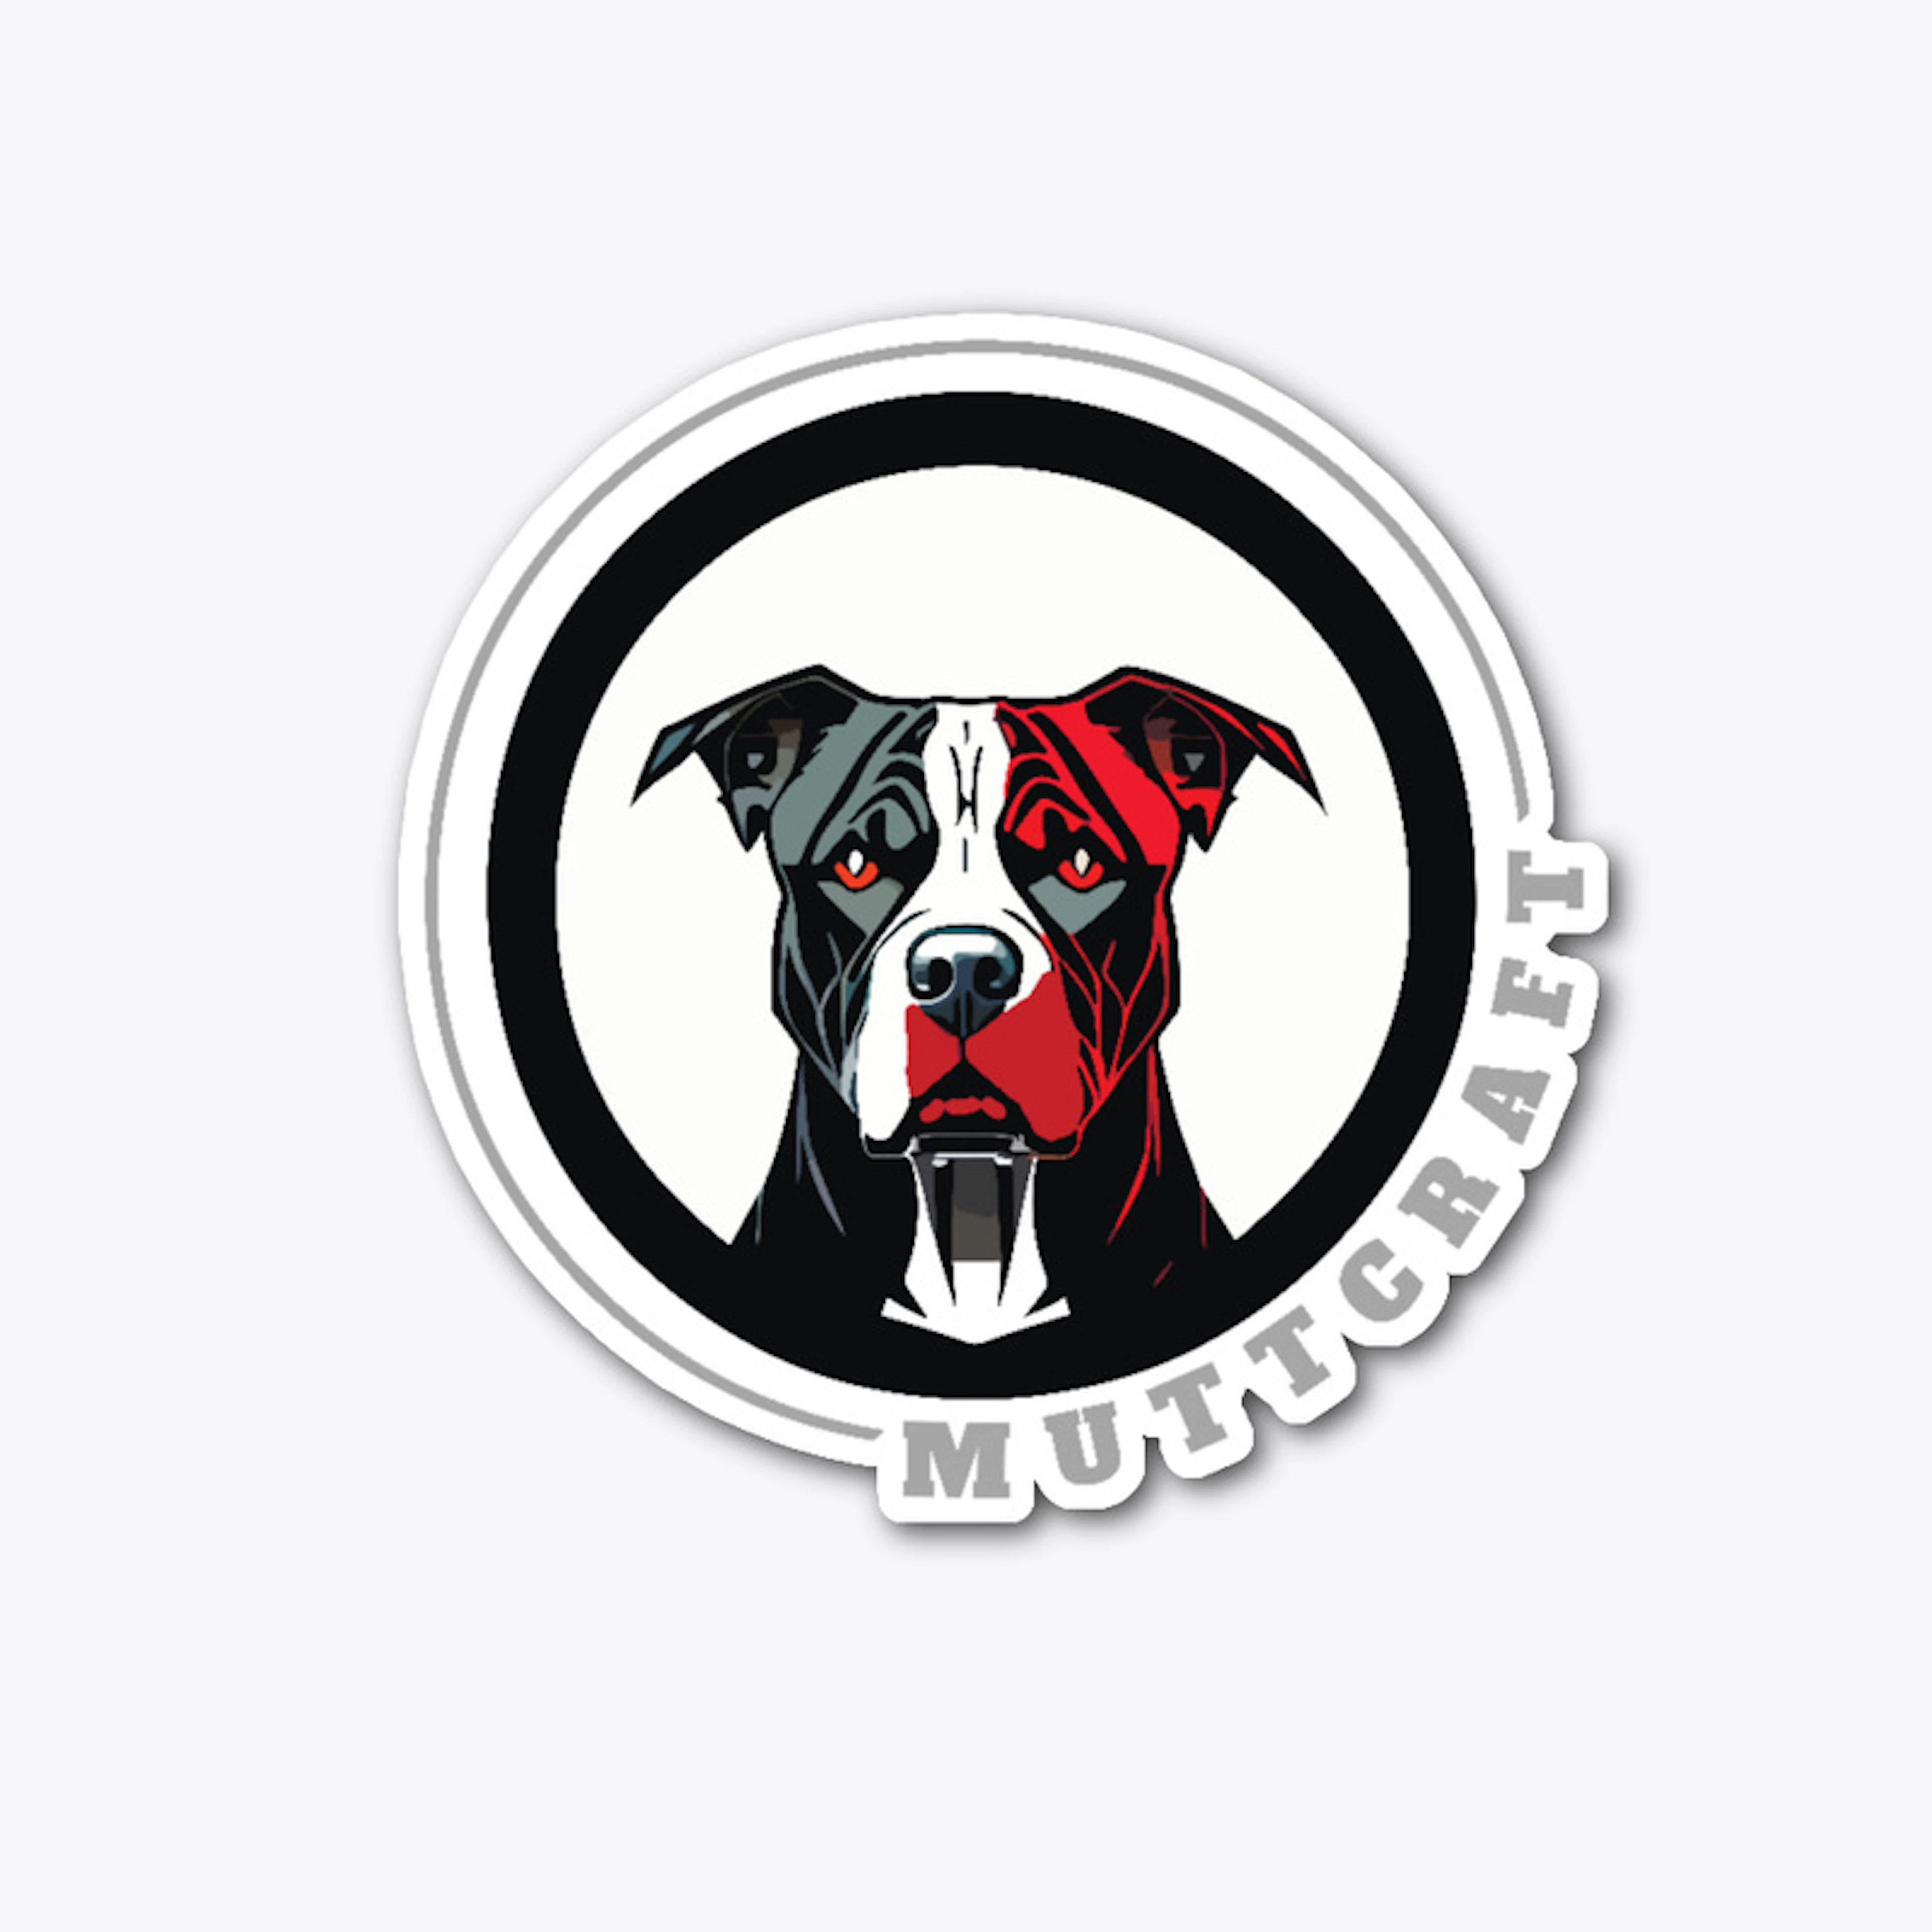 Muttcraft pitbull logo